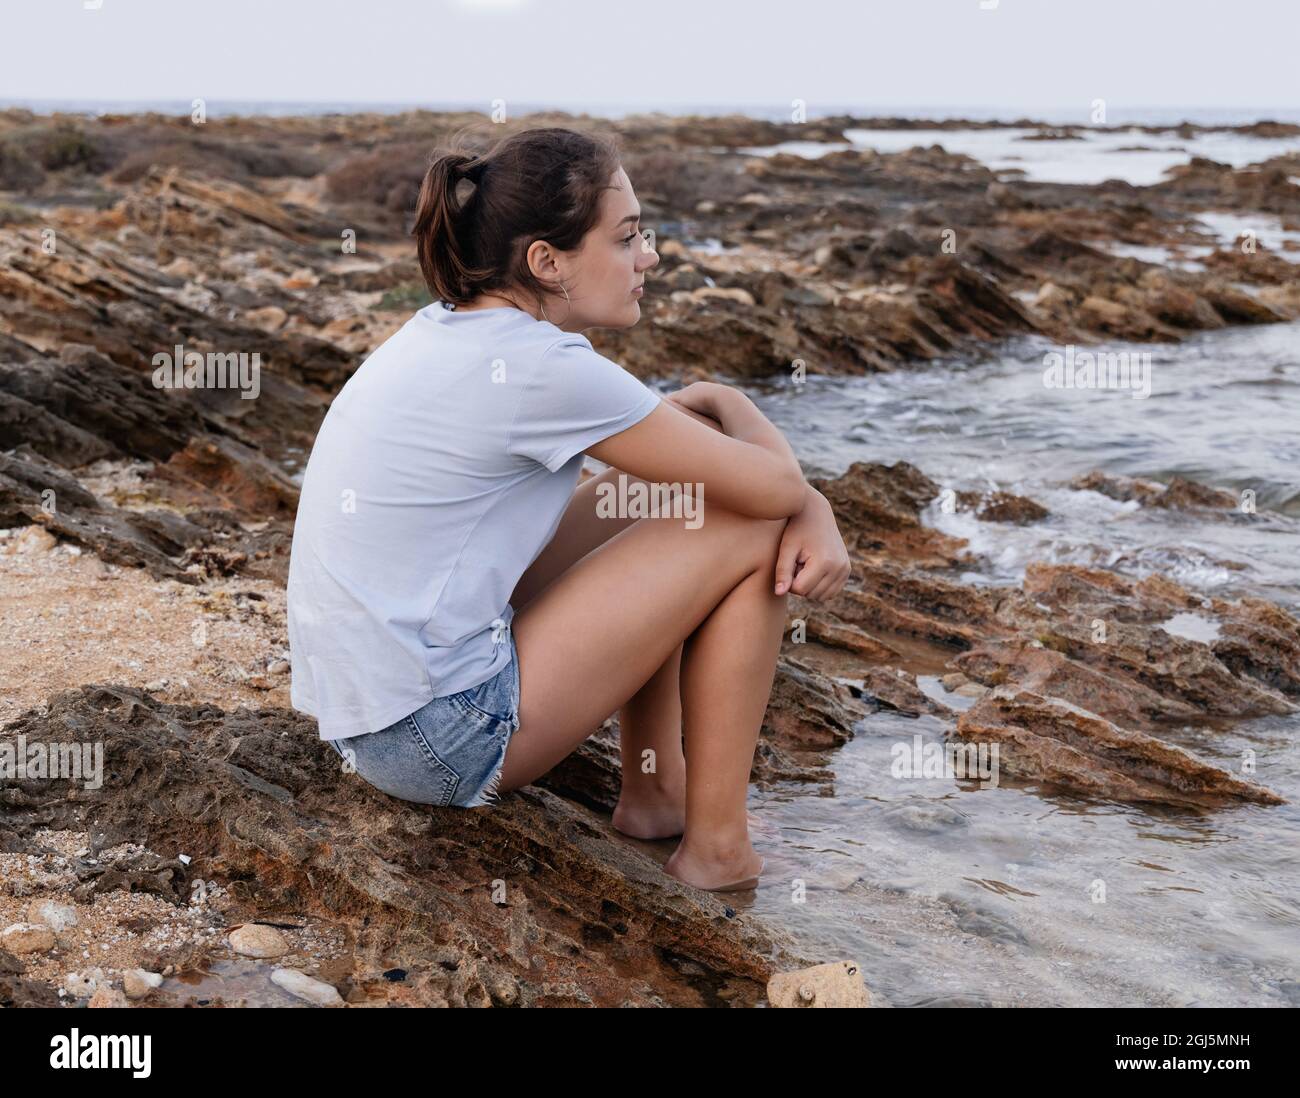 Nachdenkliches Teenager-Mädchen, das bei Sonnenuntergang auf einer Klippe am Meer sitzt, die Beine im Wasser hat und gerade aussieht, blaues T-Shirt und Jeans-Shorts trägt und Side Vie trägt Stockfoto